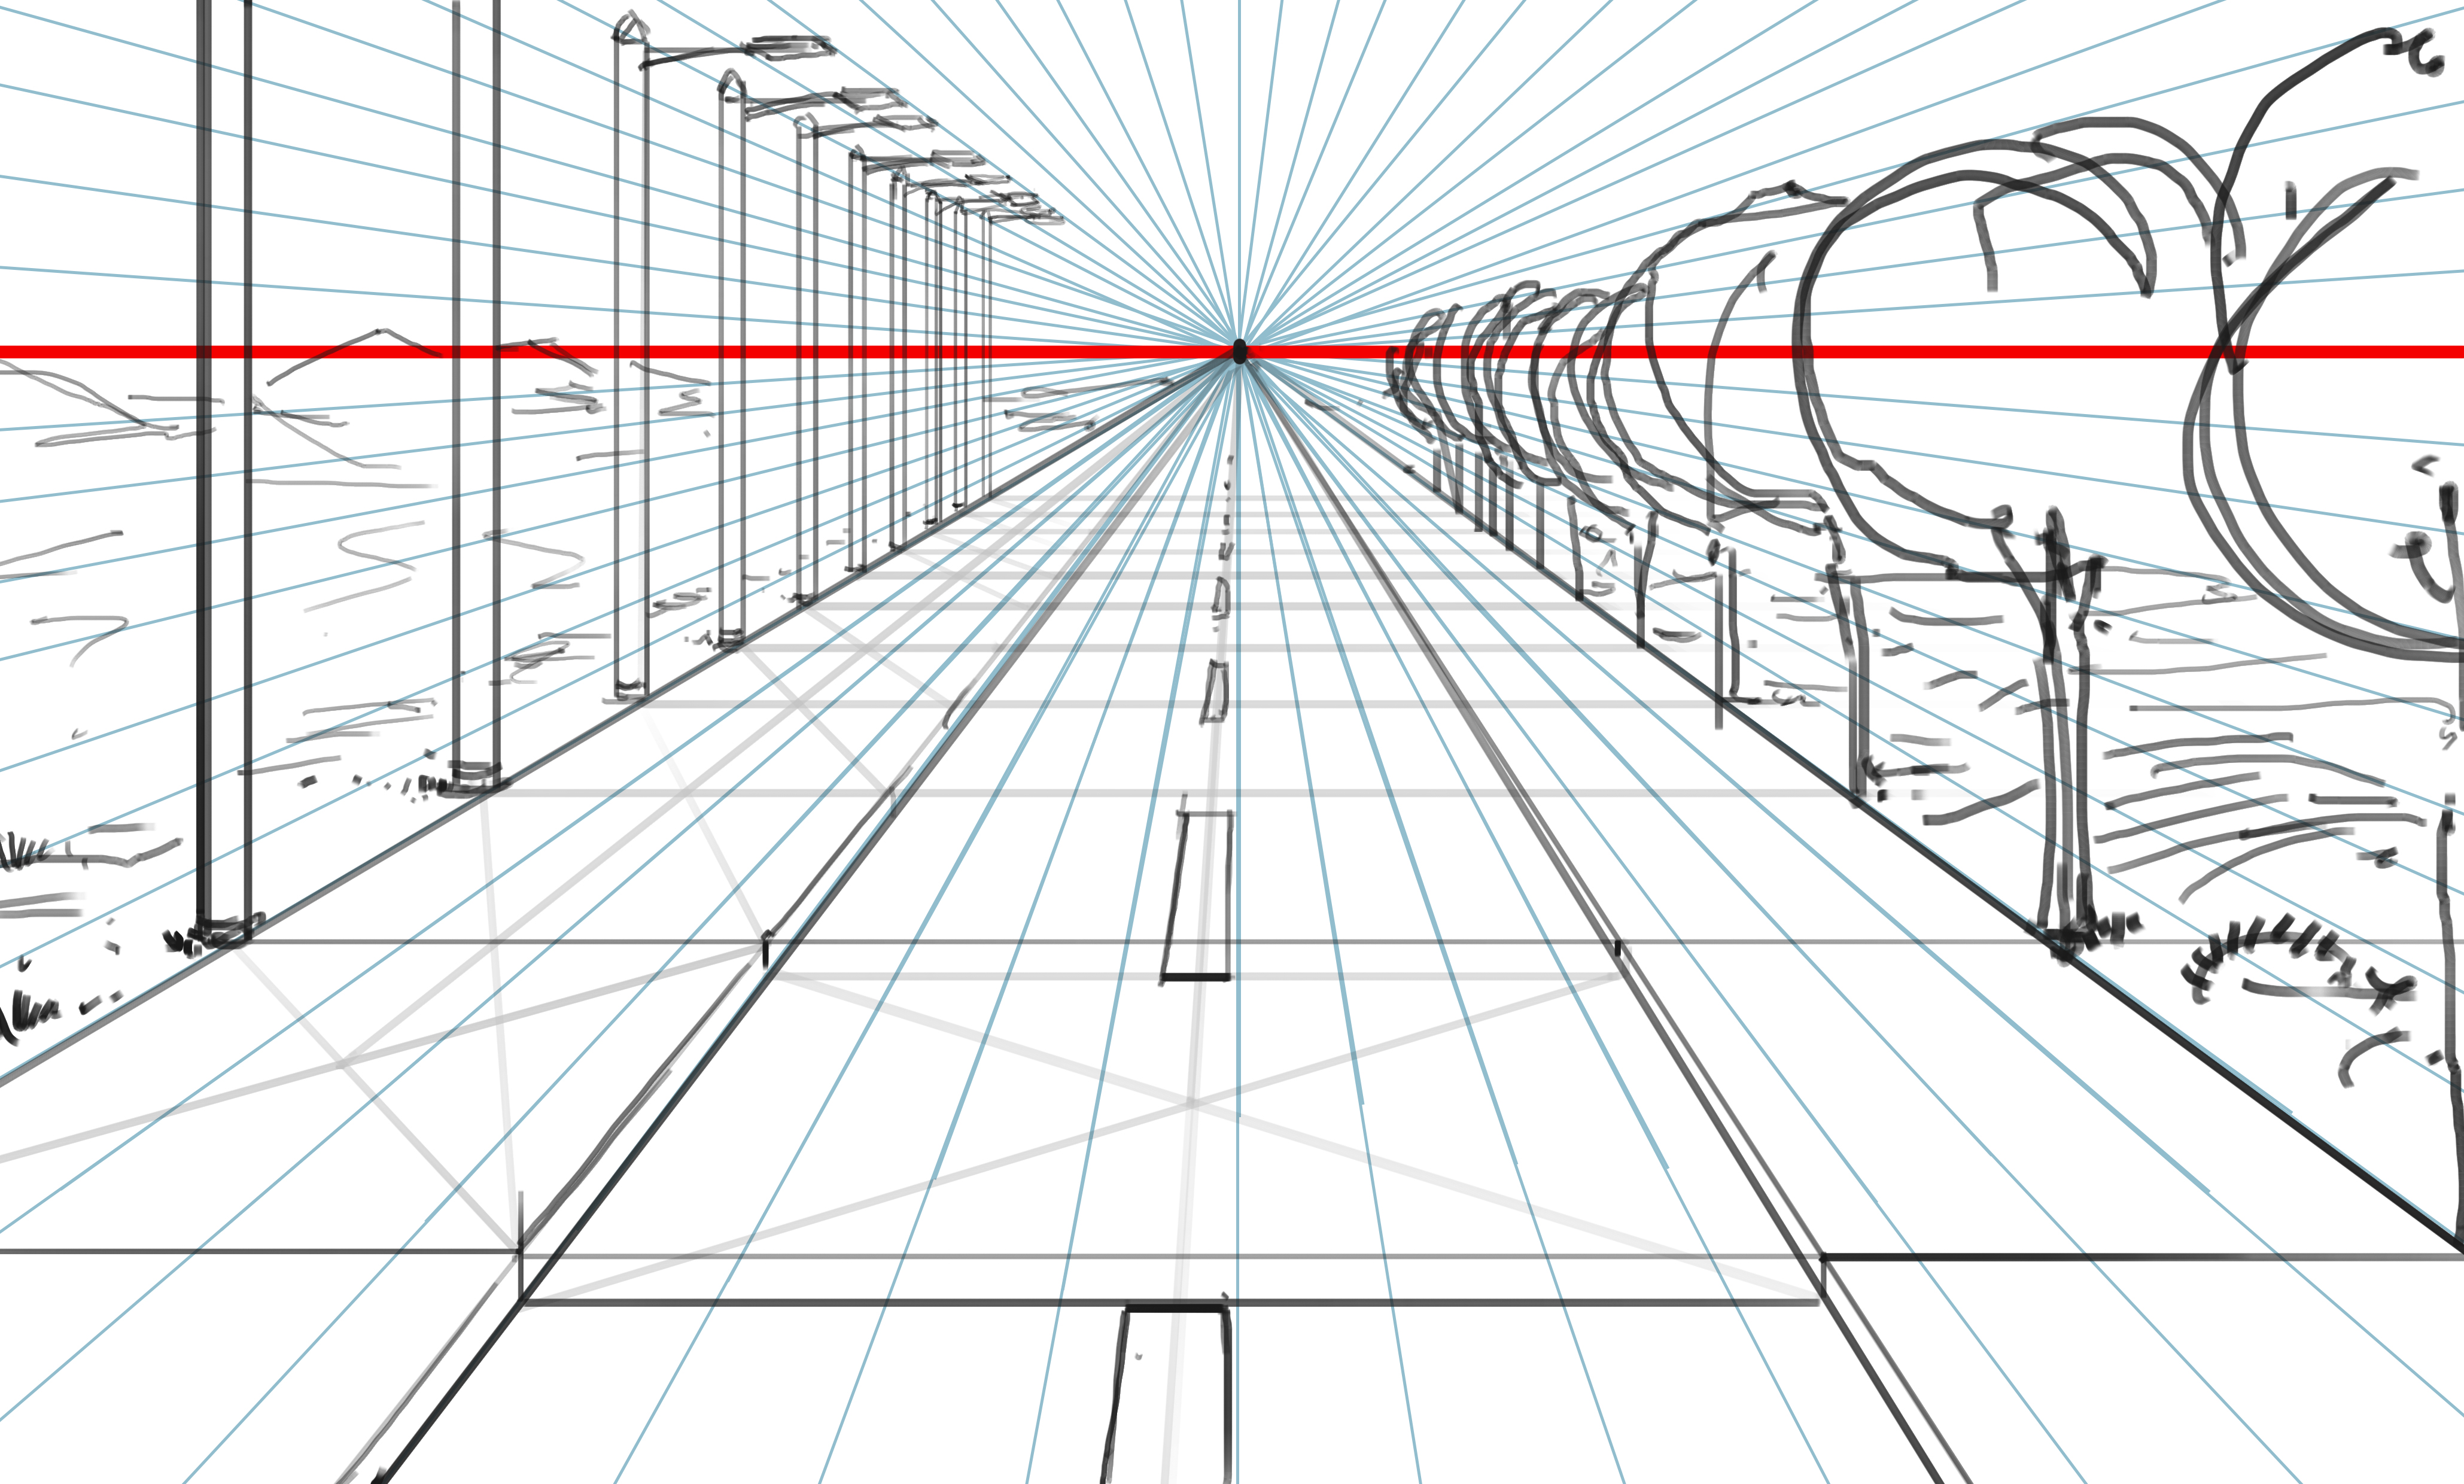 Междугородная линия. Рисунок с линейной перспективы и точкой схода. Линейная перспектива точка схода. Линейная перспектива с 1 точкой схода. Перспектива точки схода в рисовании.